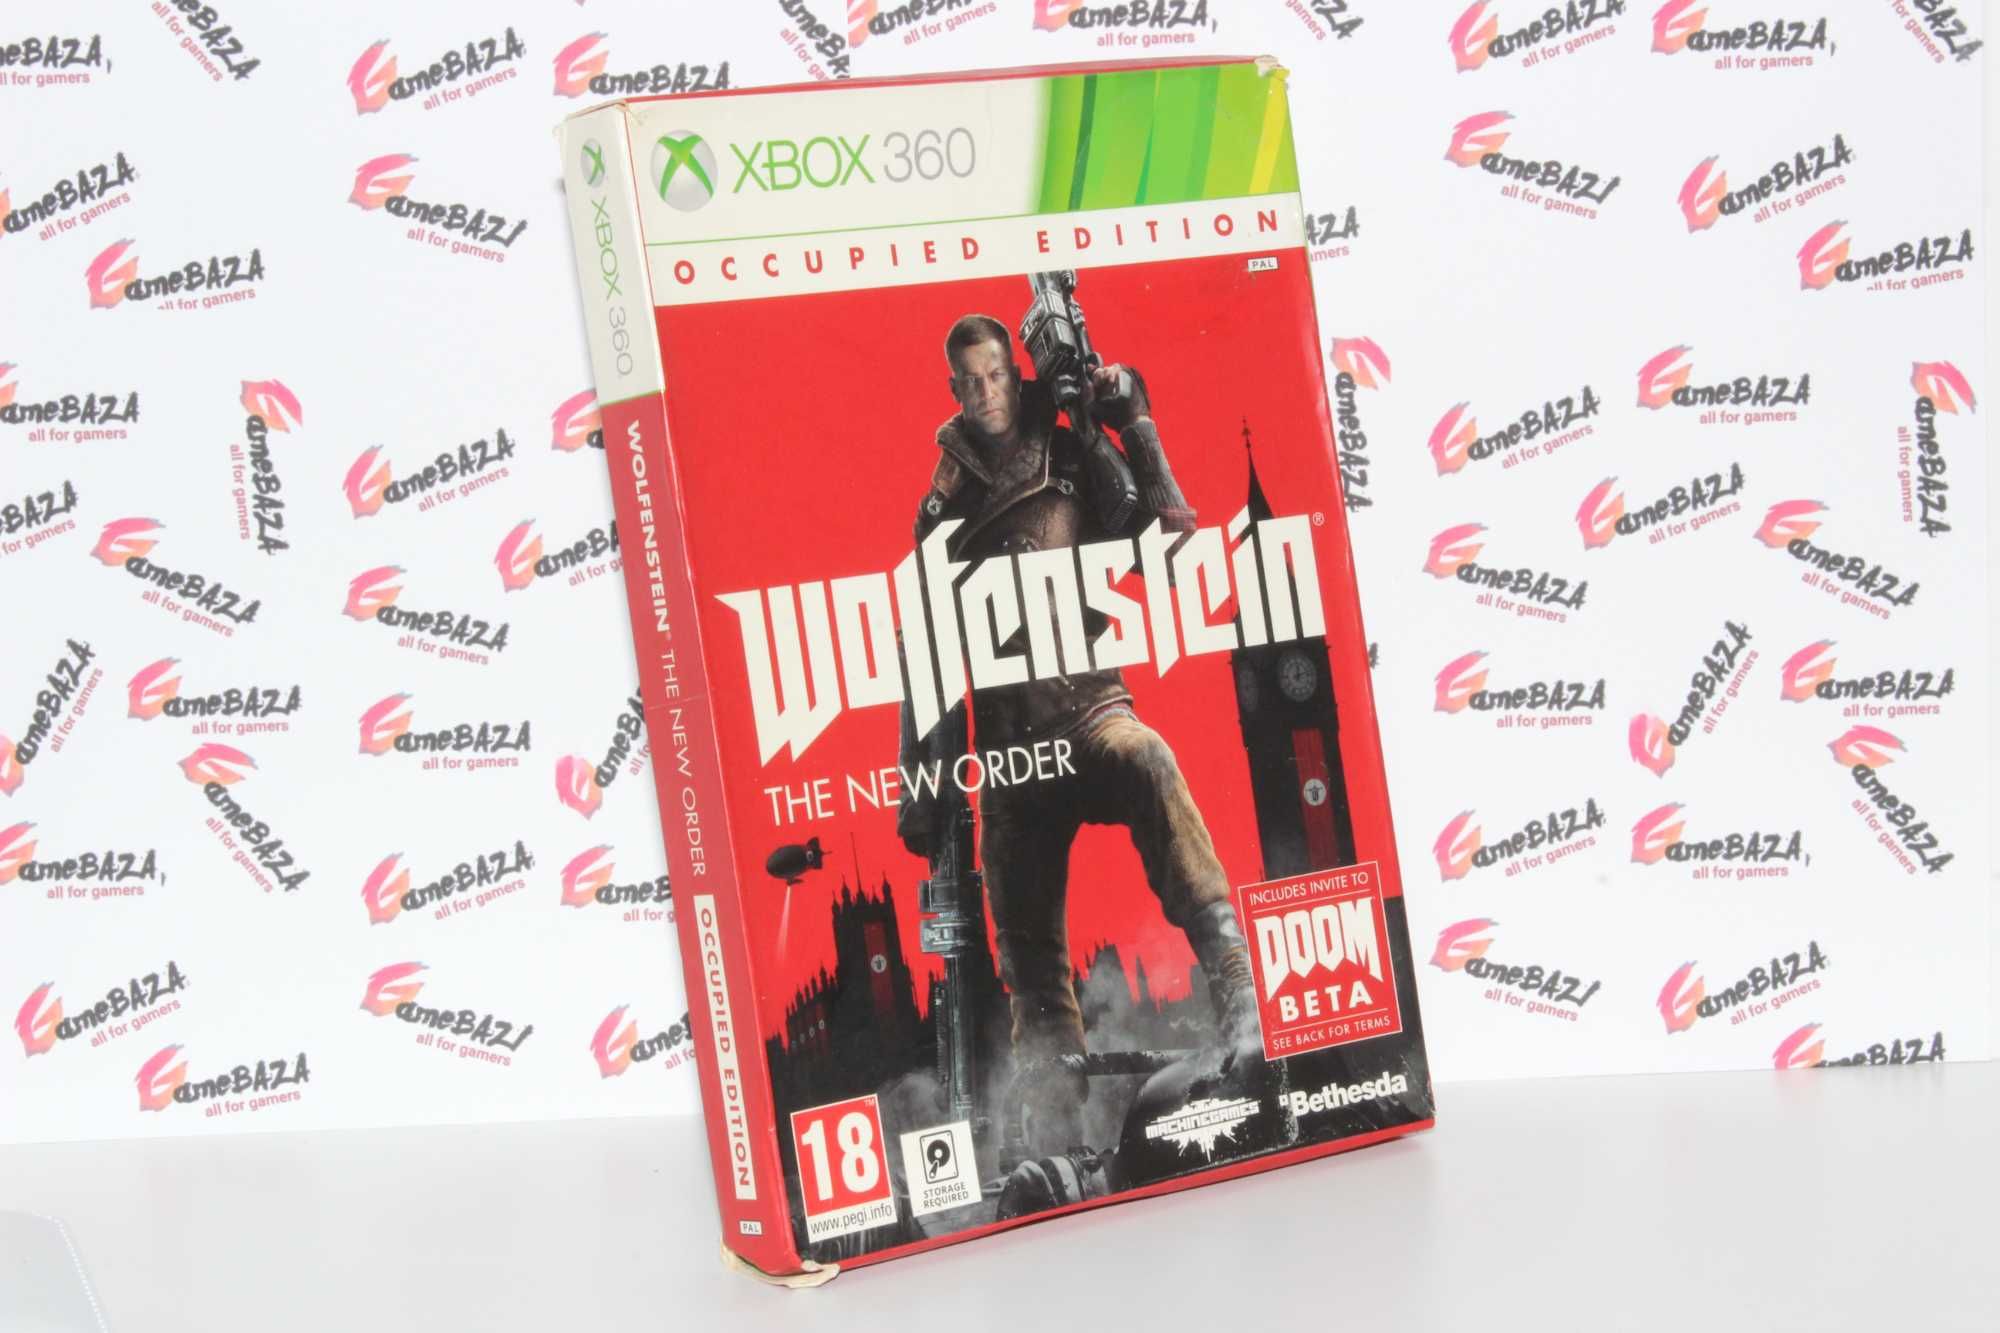 PL Wolfenstein: The New Order Occupied Edition xbox 360 GameBAZA